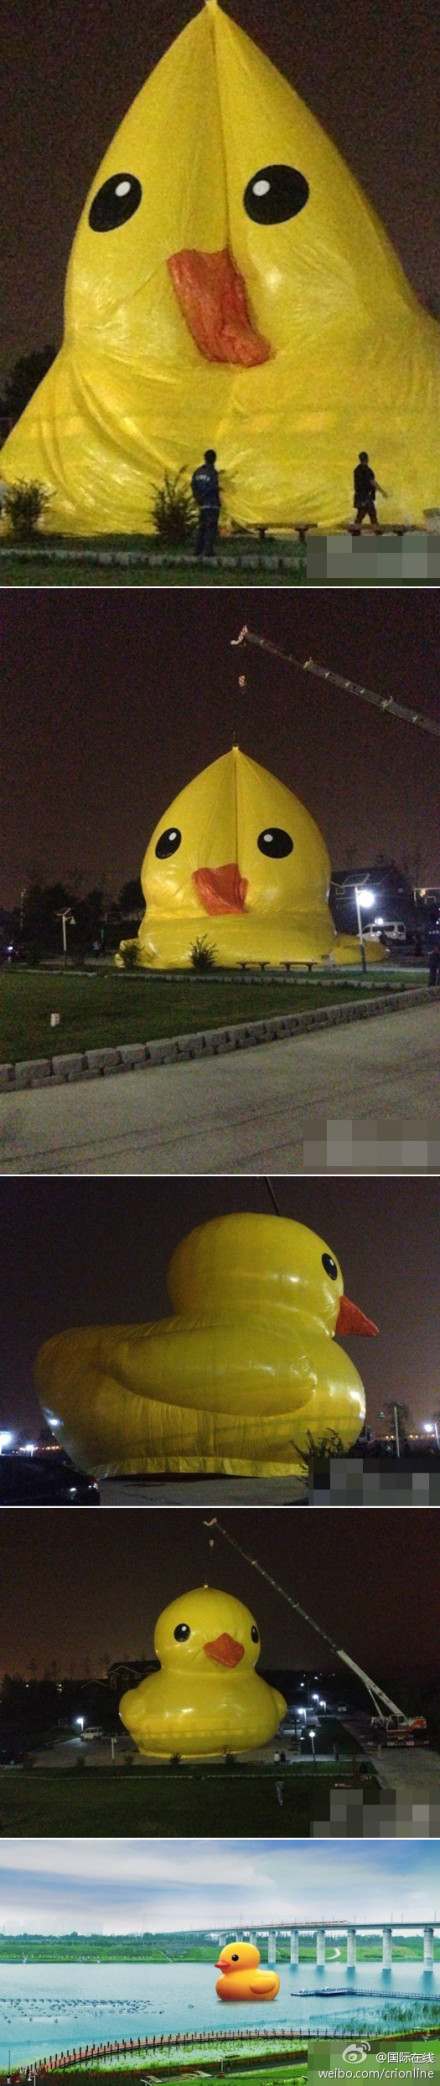 Rubber duck in Beijing 2